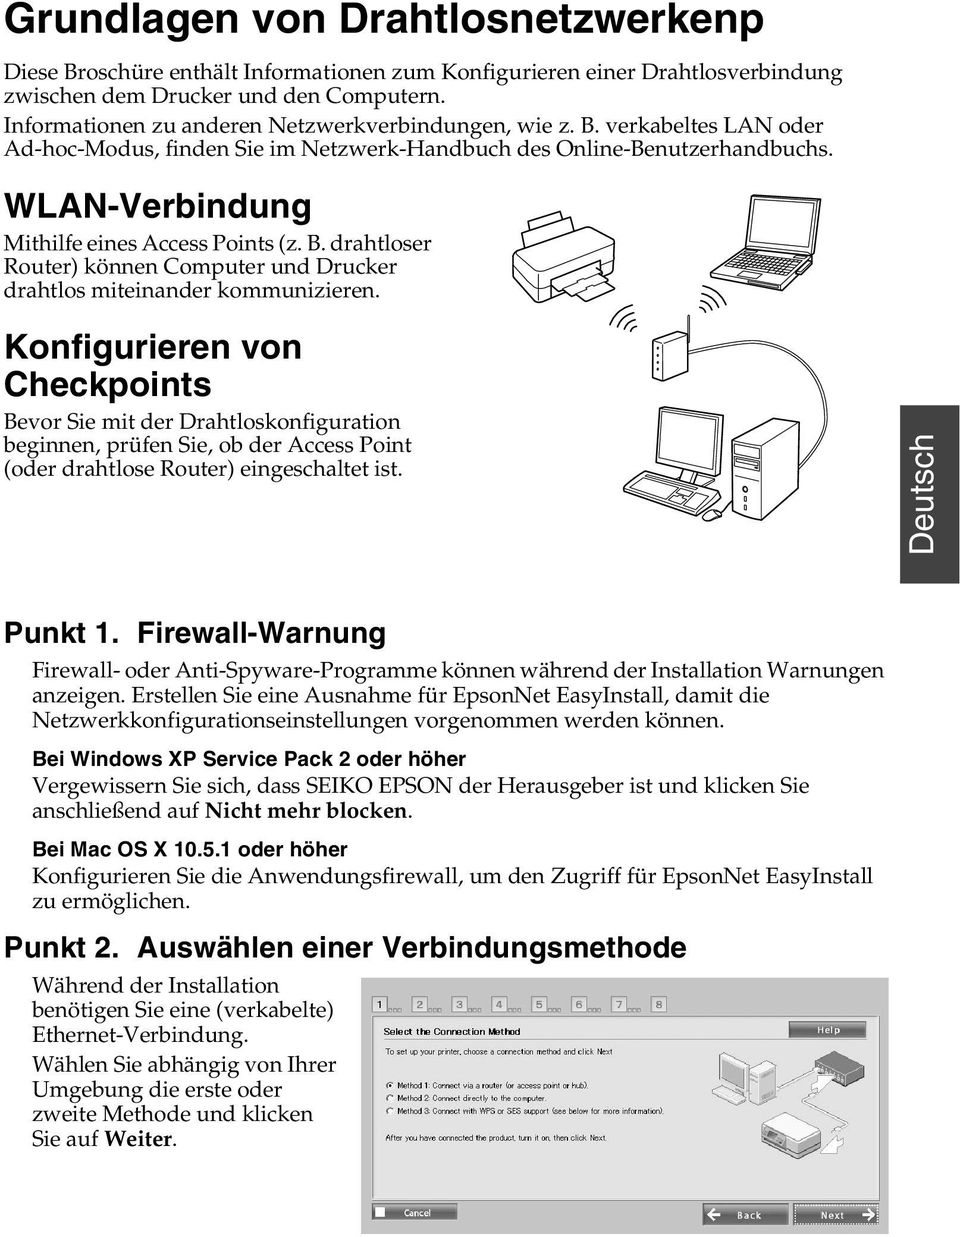 WLAN-Verbindung Mithilfe eines Access Points (z. B. drahtloser Router) können Computer und Drucker drahtlos miteinander kommunizieren.